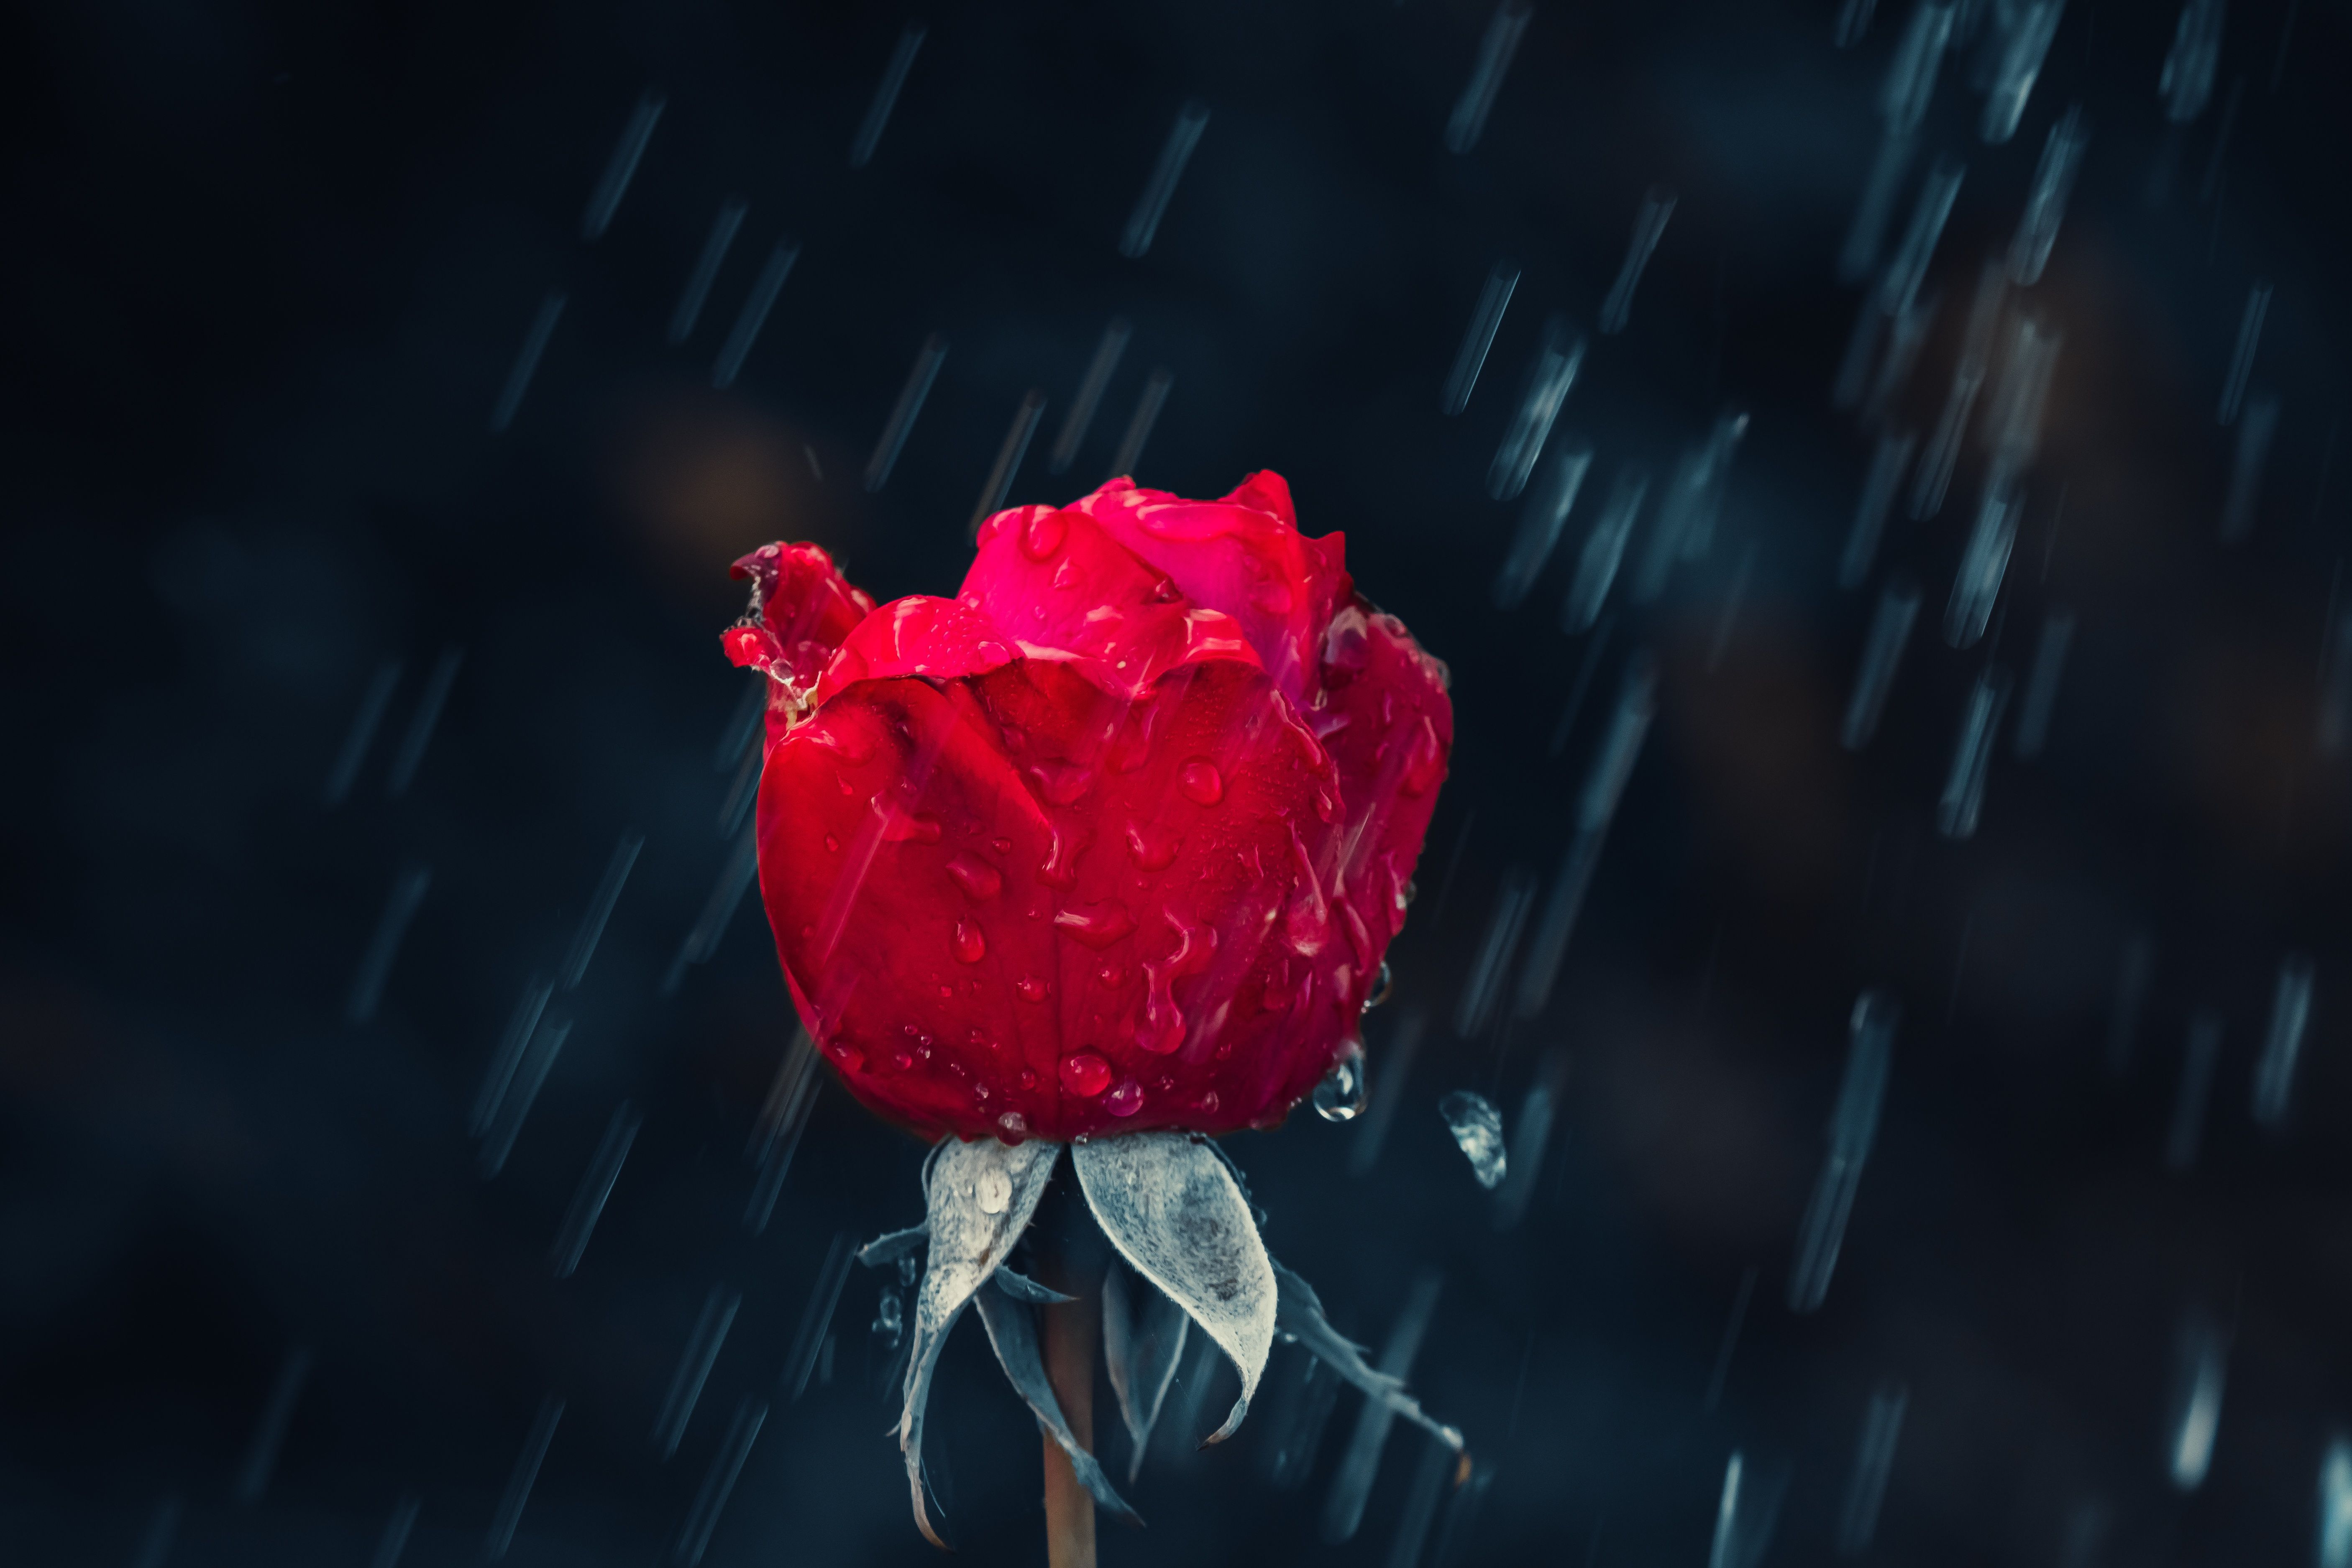 Red Rose 4K Wallpaper, Rain, Water drops, Dark background, Closeup, 5K, Flowers,